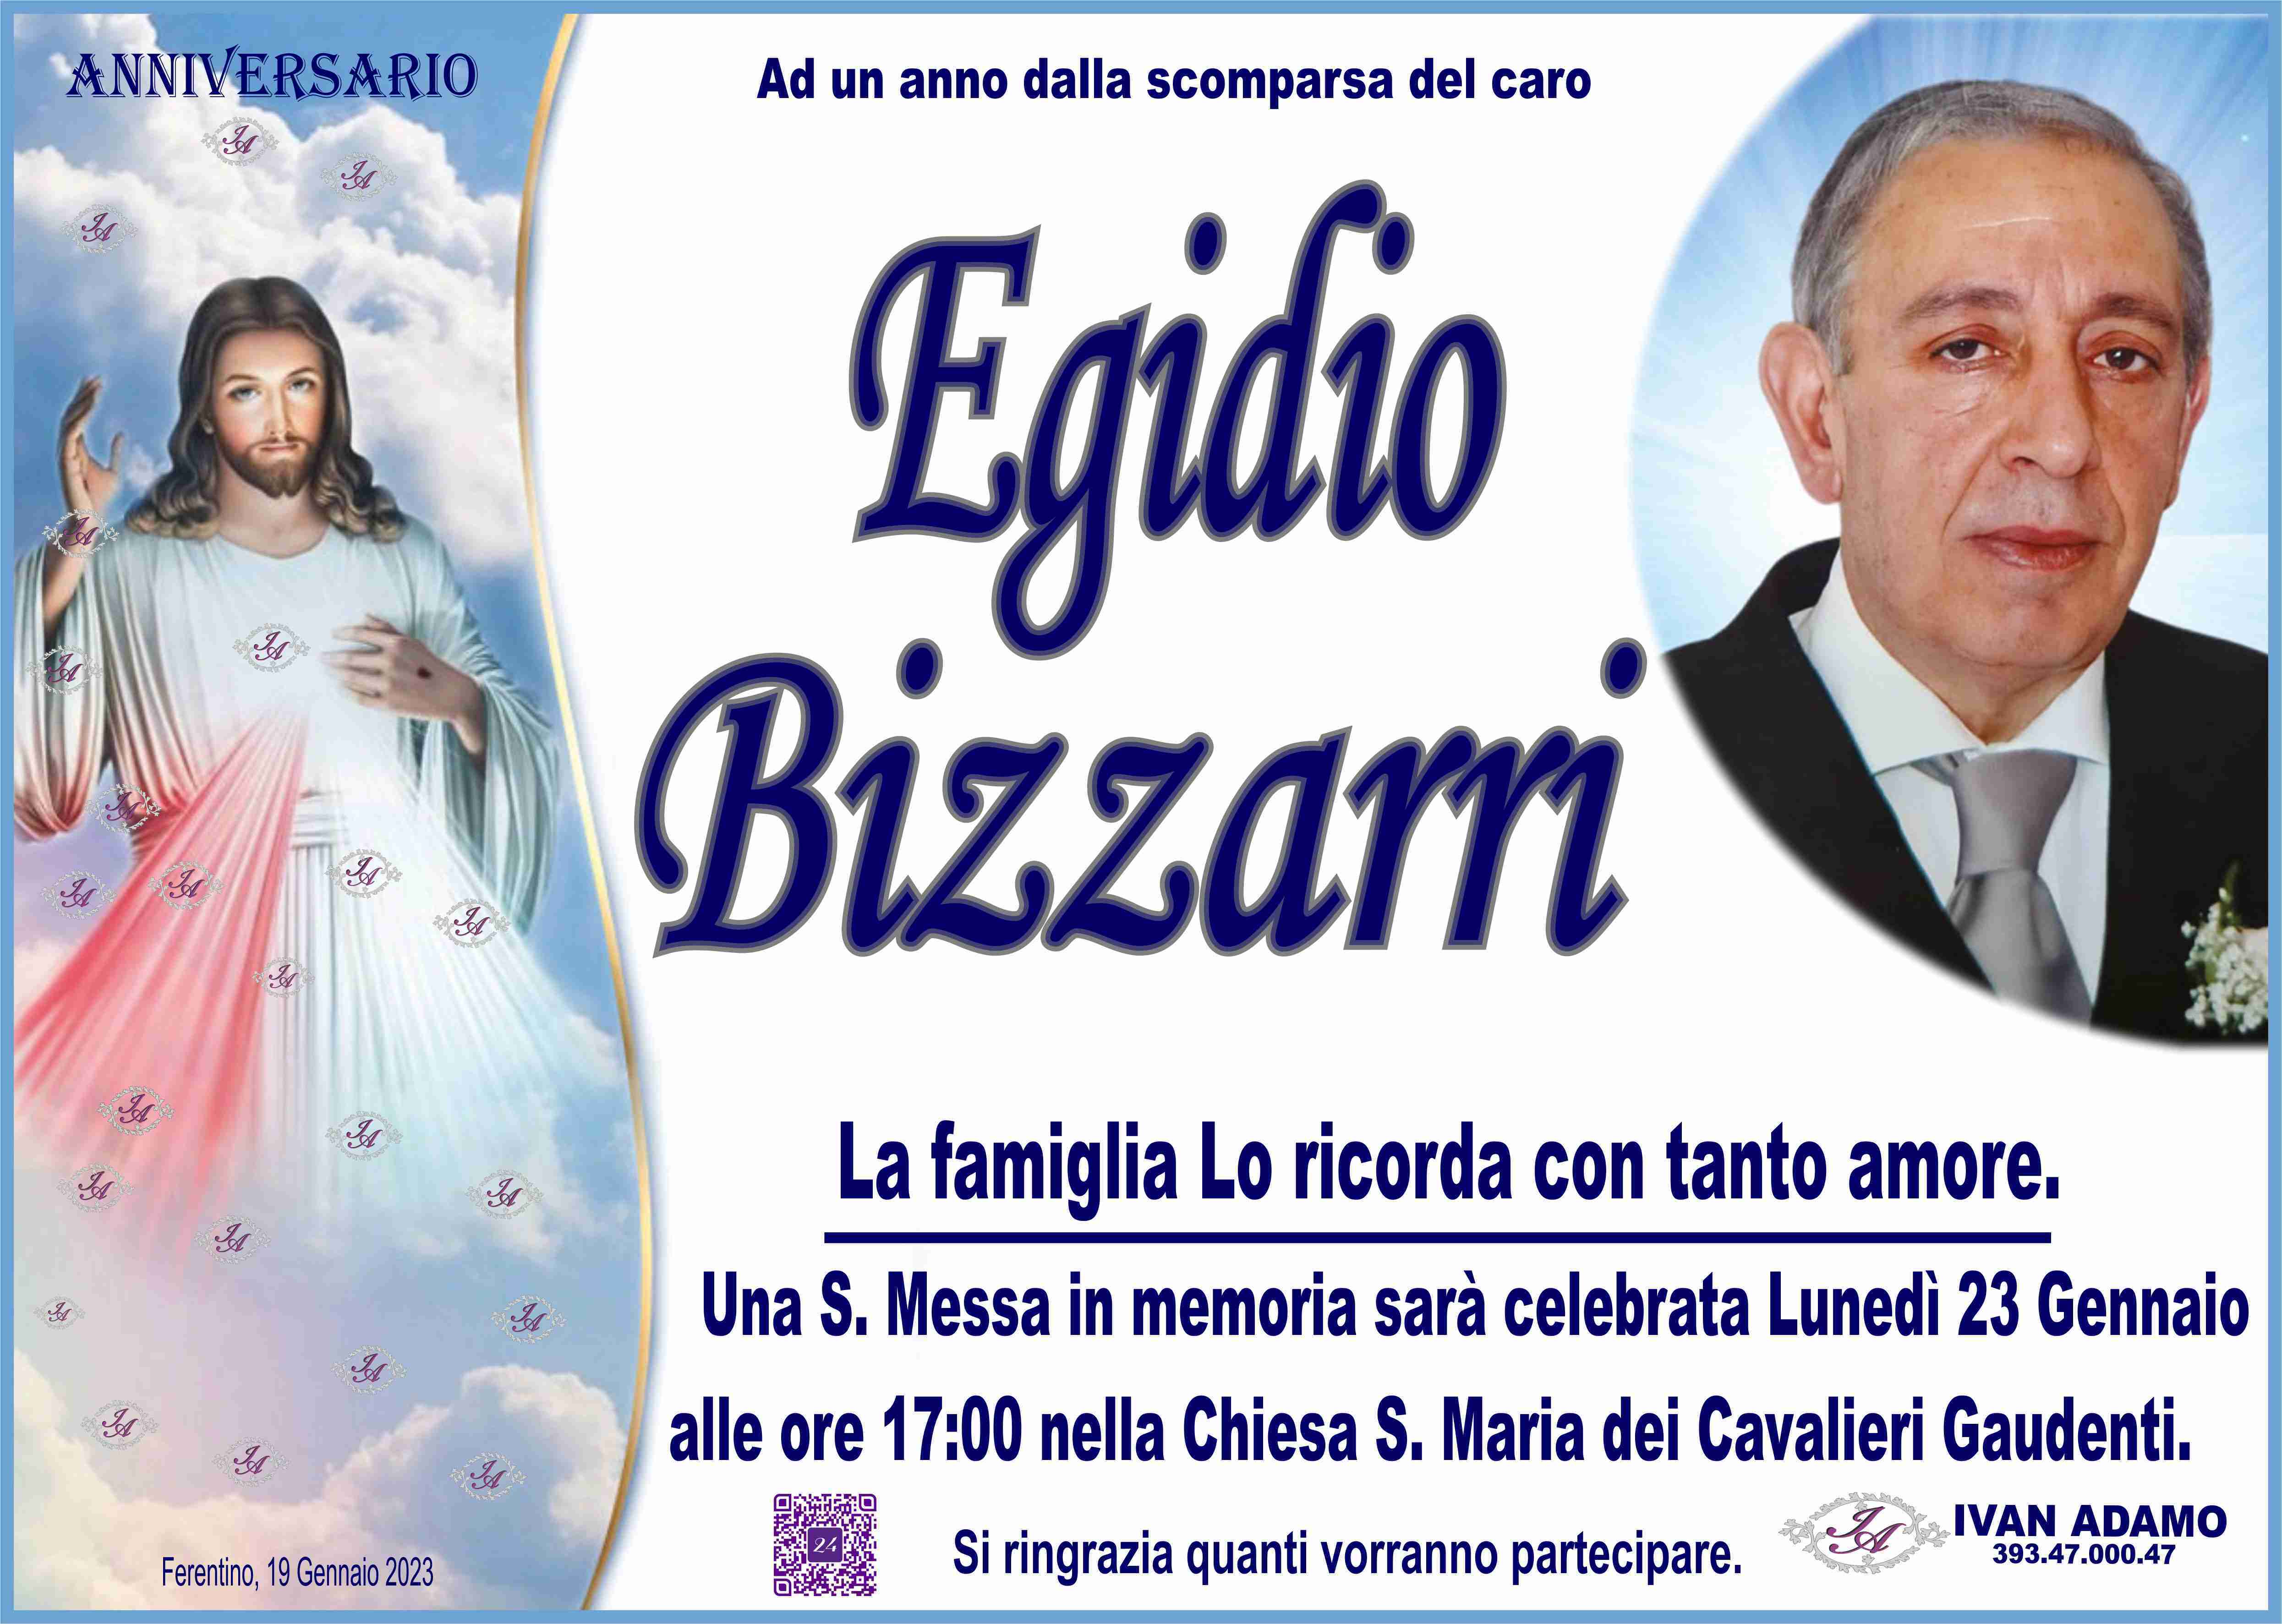 Egidio Bizzarri